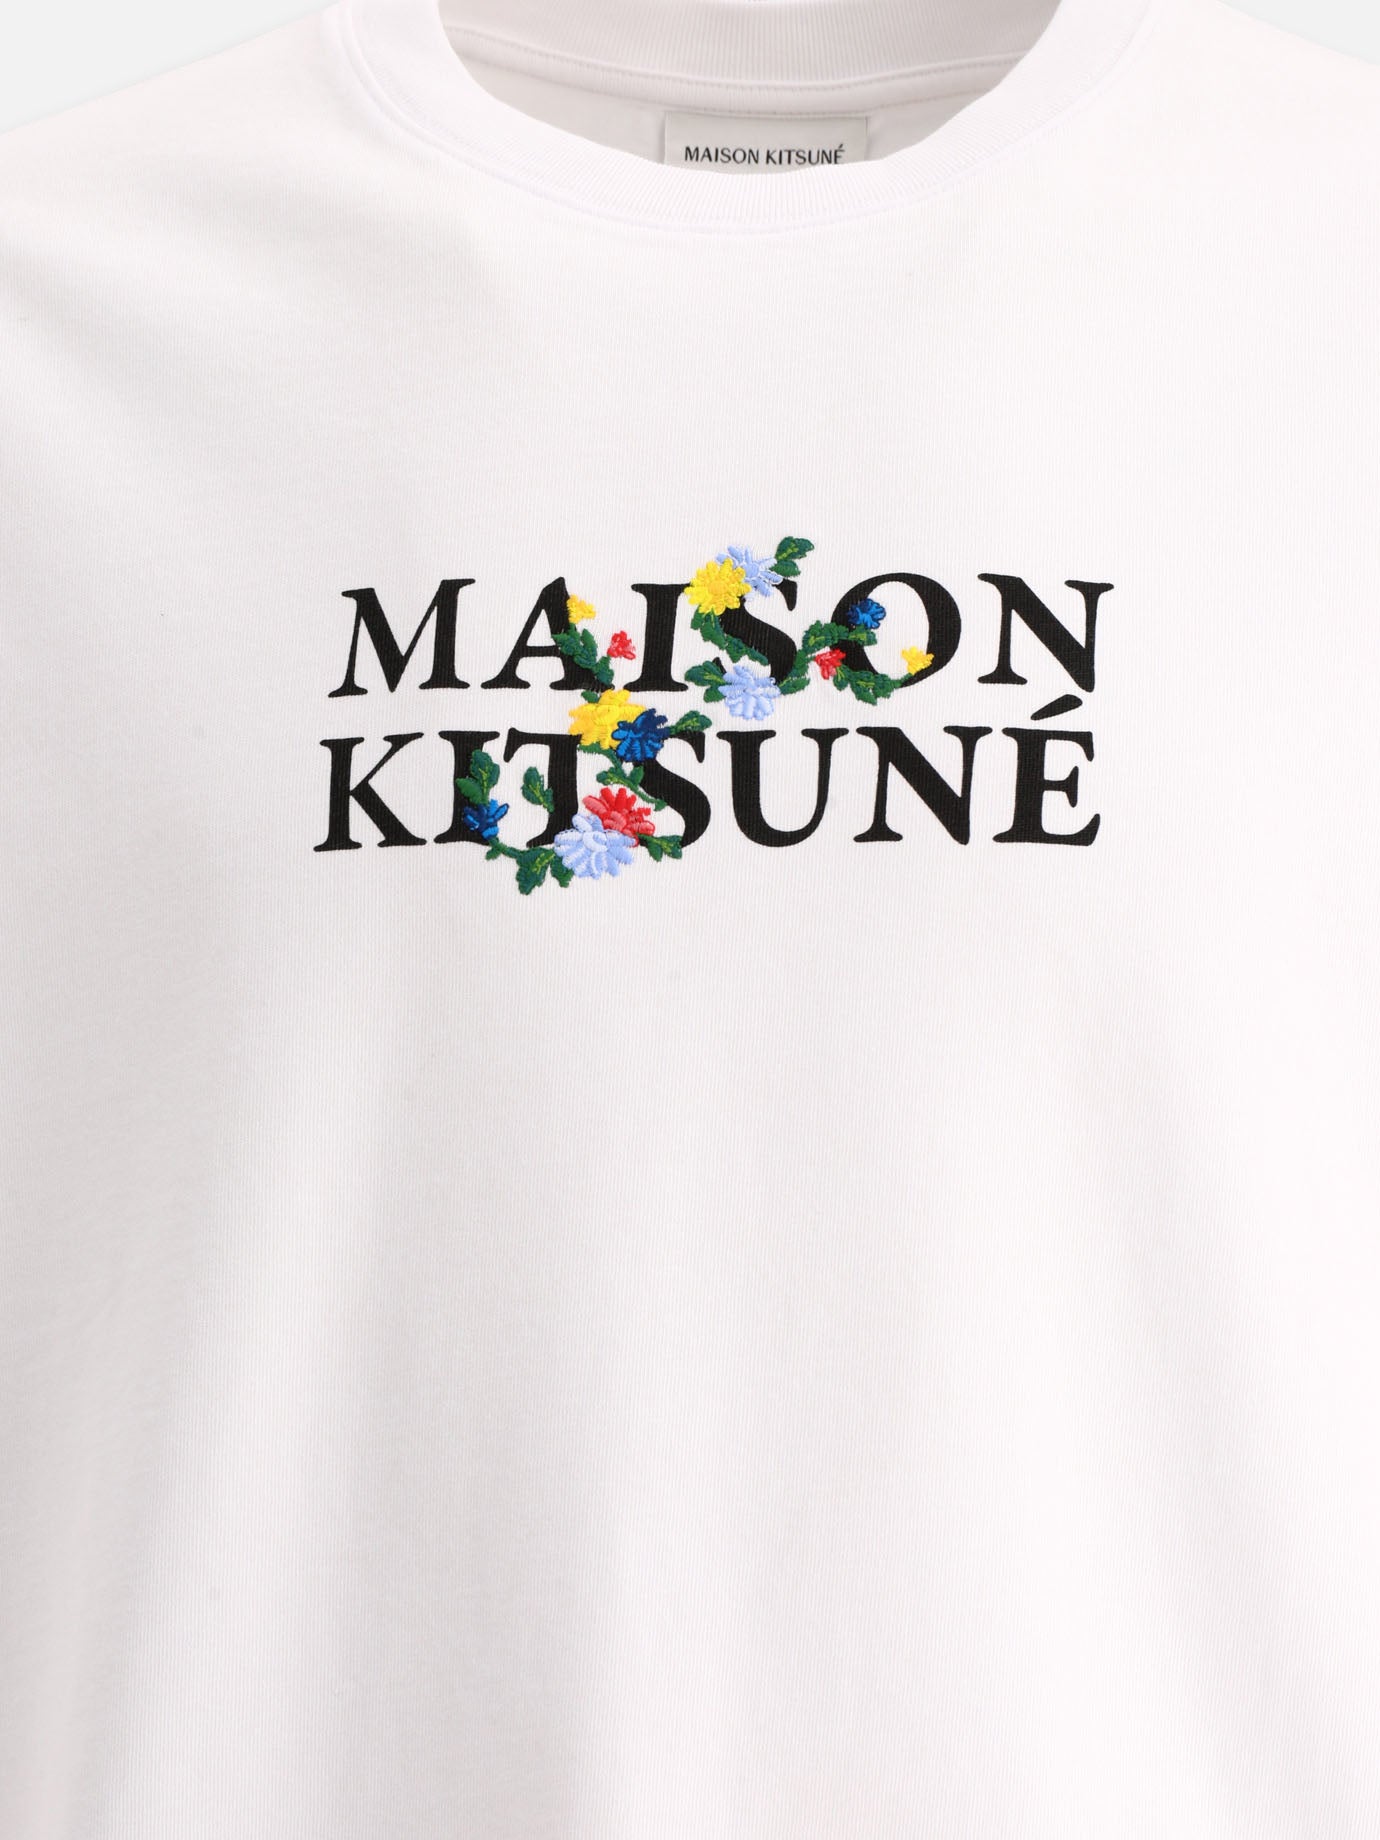 "Maison Kitsuné Flowers" t-shirt